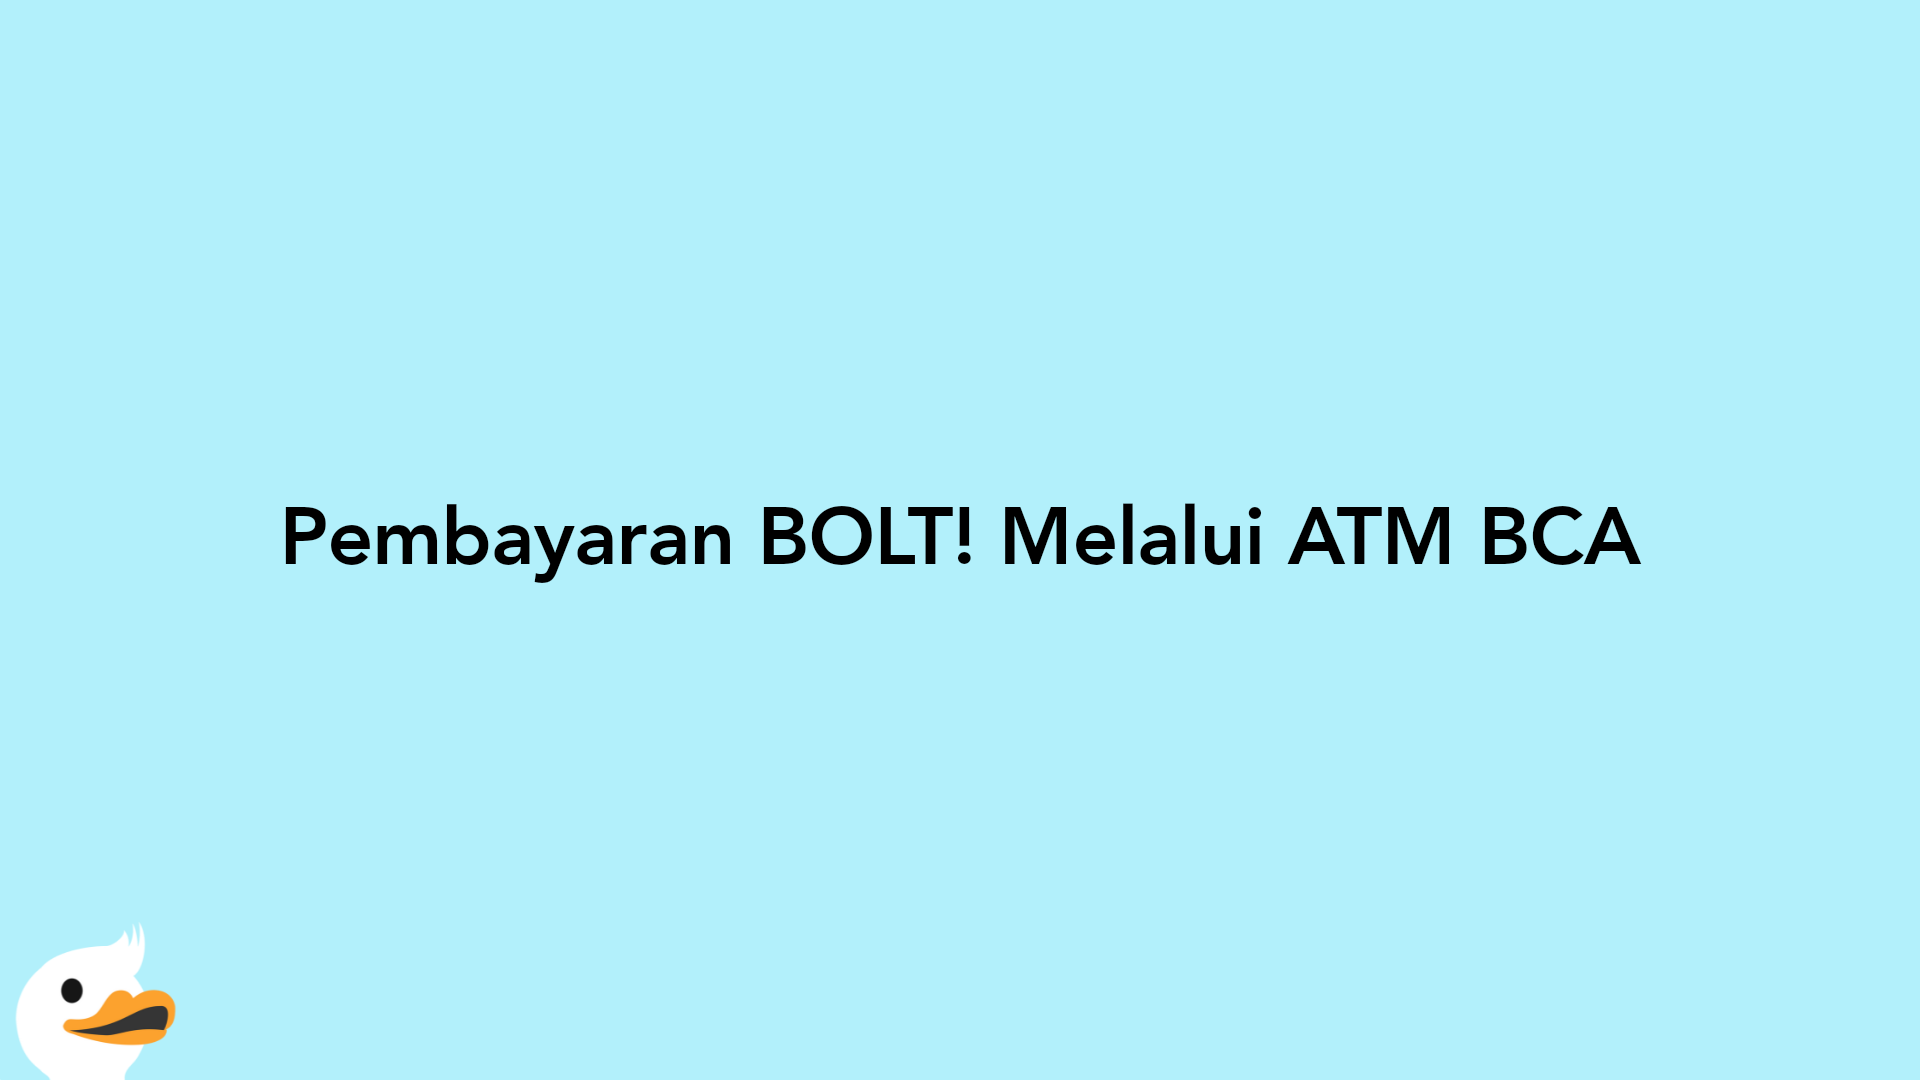 Pembayaran BOLT! Melalui ATM BCA